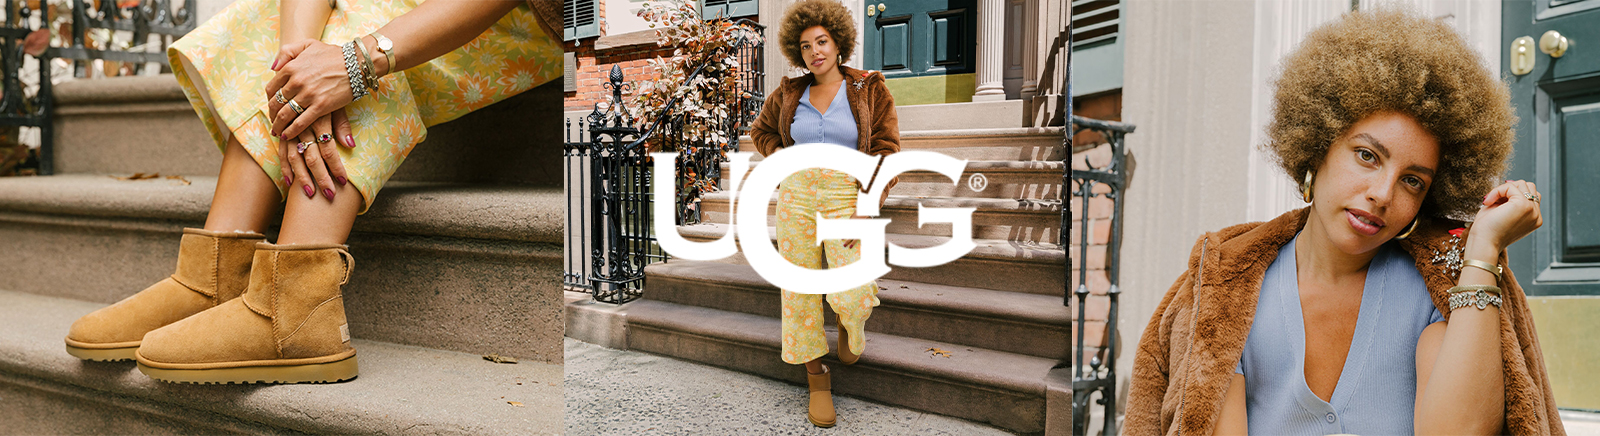 UGG Schuhe kaufen &#9658; ganz bequem & online bei Prange